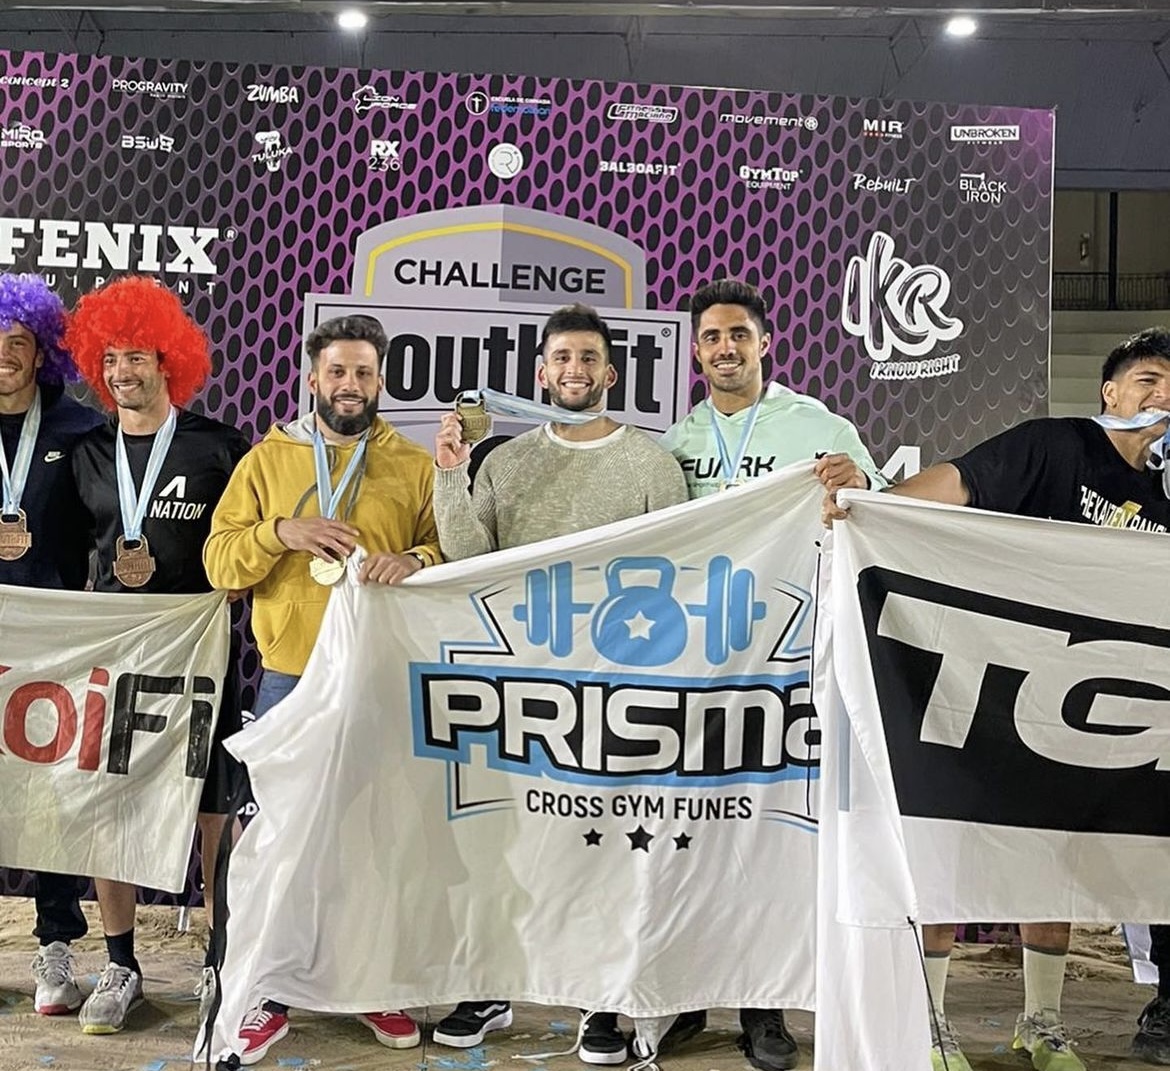 Tres funenses consiguieron el primer puesto en un torneo sudamericano de crossfit